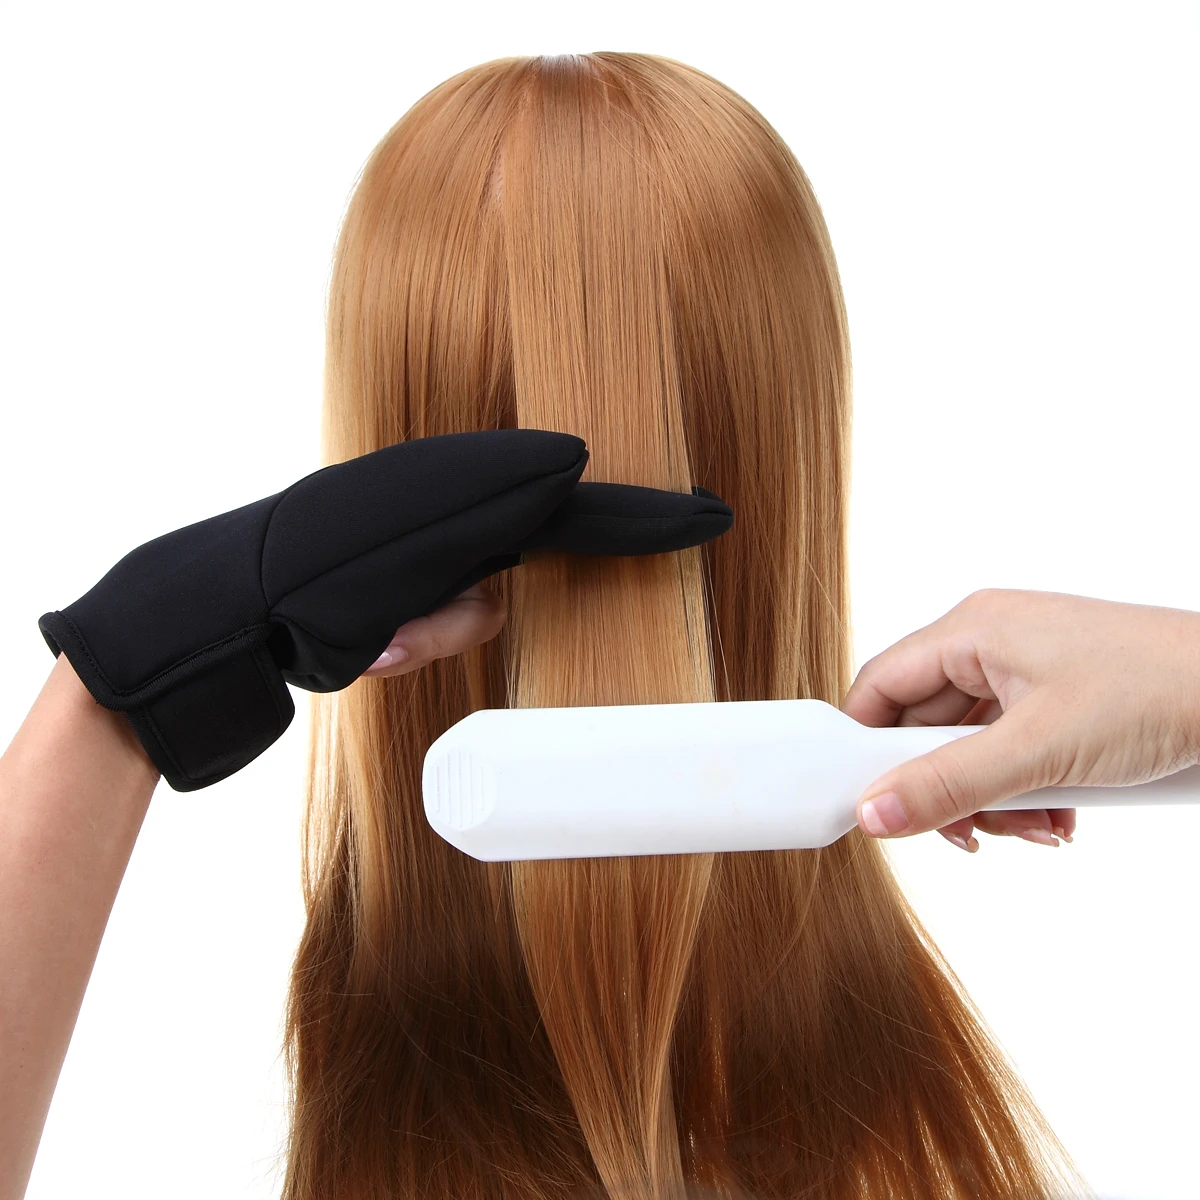 Профессиональная стрижка волос три пальца перчатки термостойкая перчатка выпрямление волос щипцы для завивки Инструменты для укладки волос